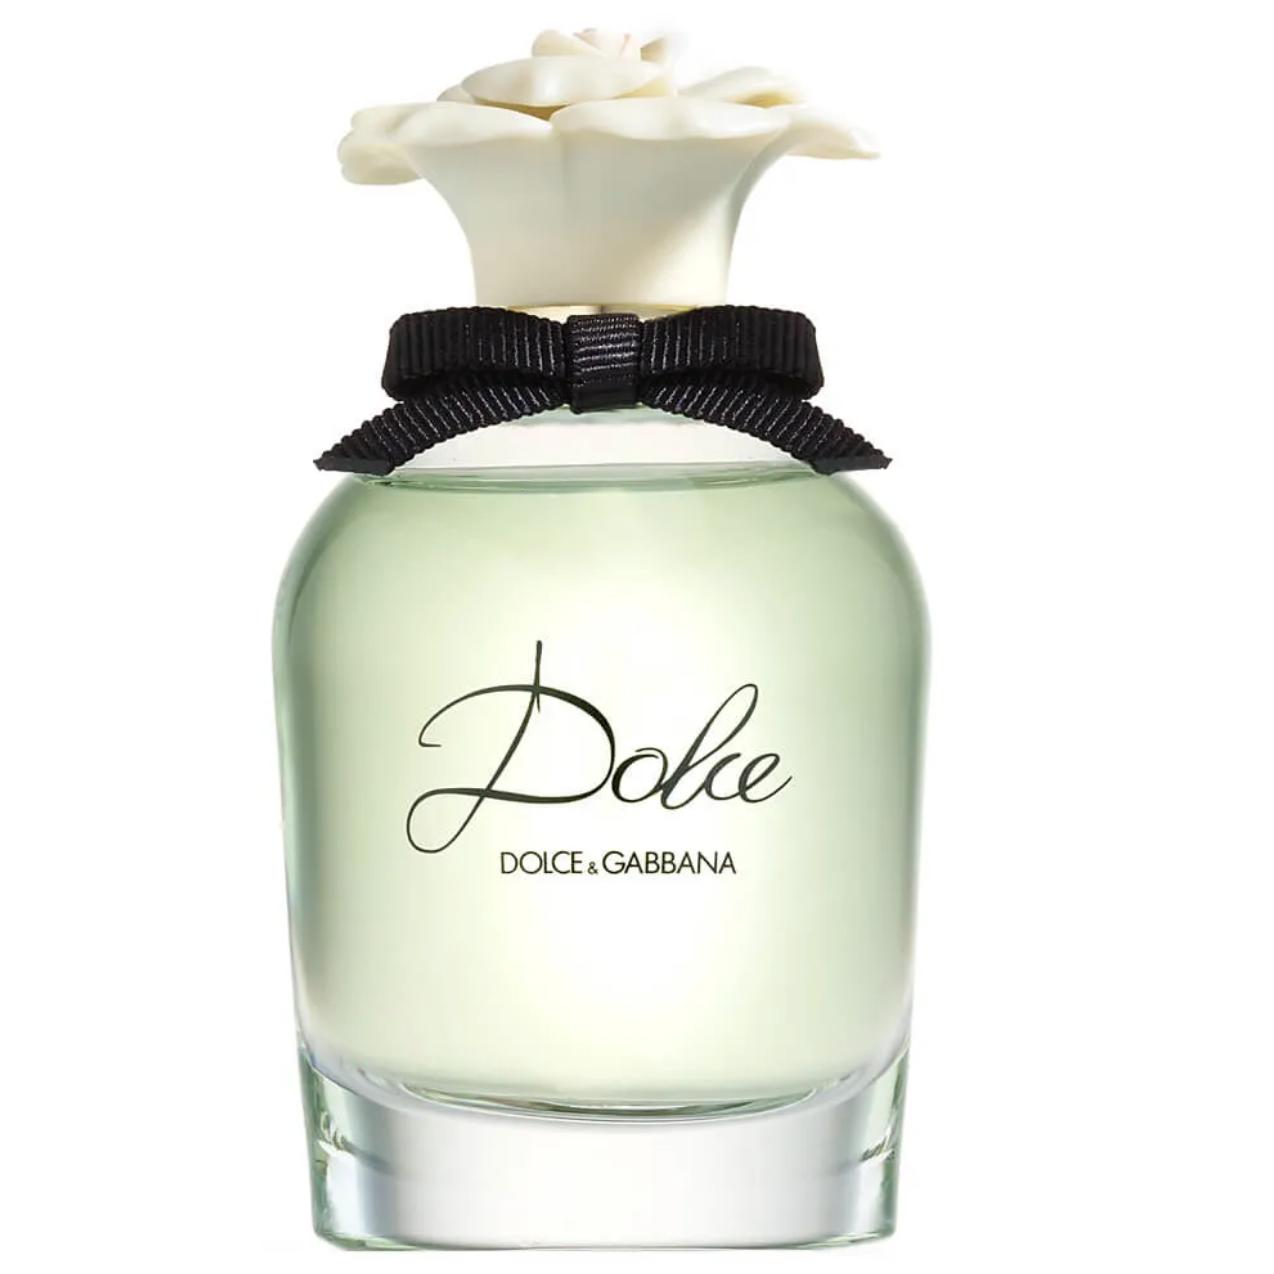 Dolce & Gabbana Dolce Perfume Travel